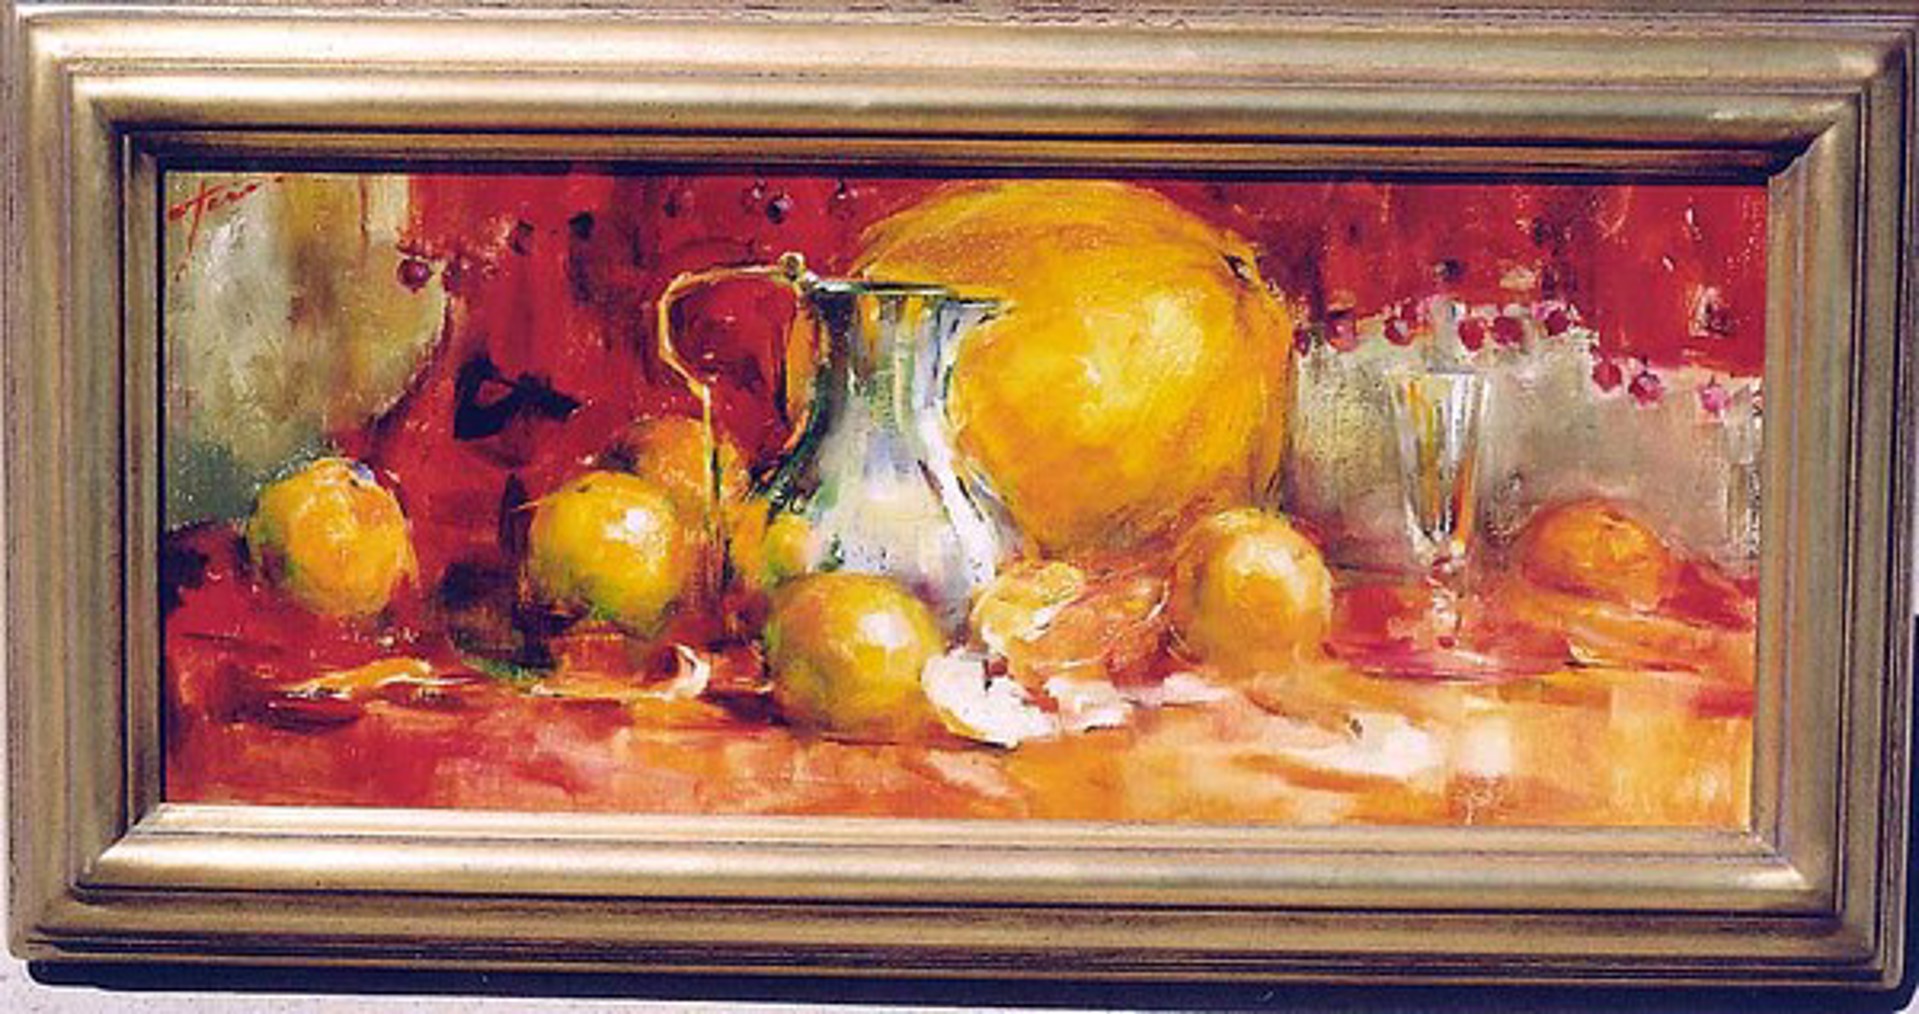 Oranges with Pitcher by Yana Golubyatnikova